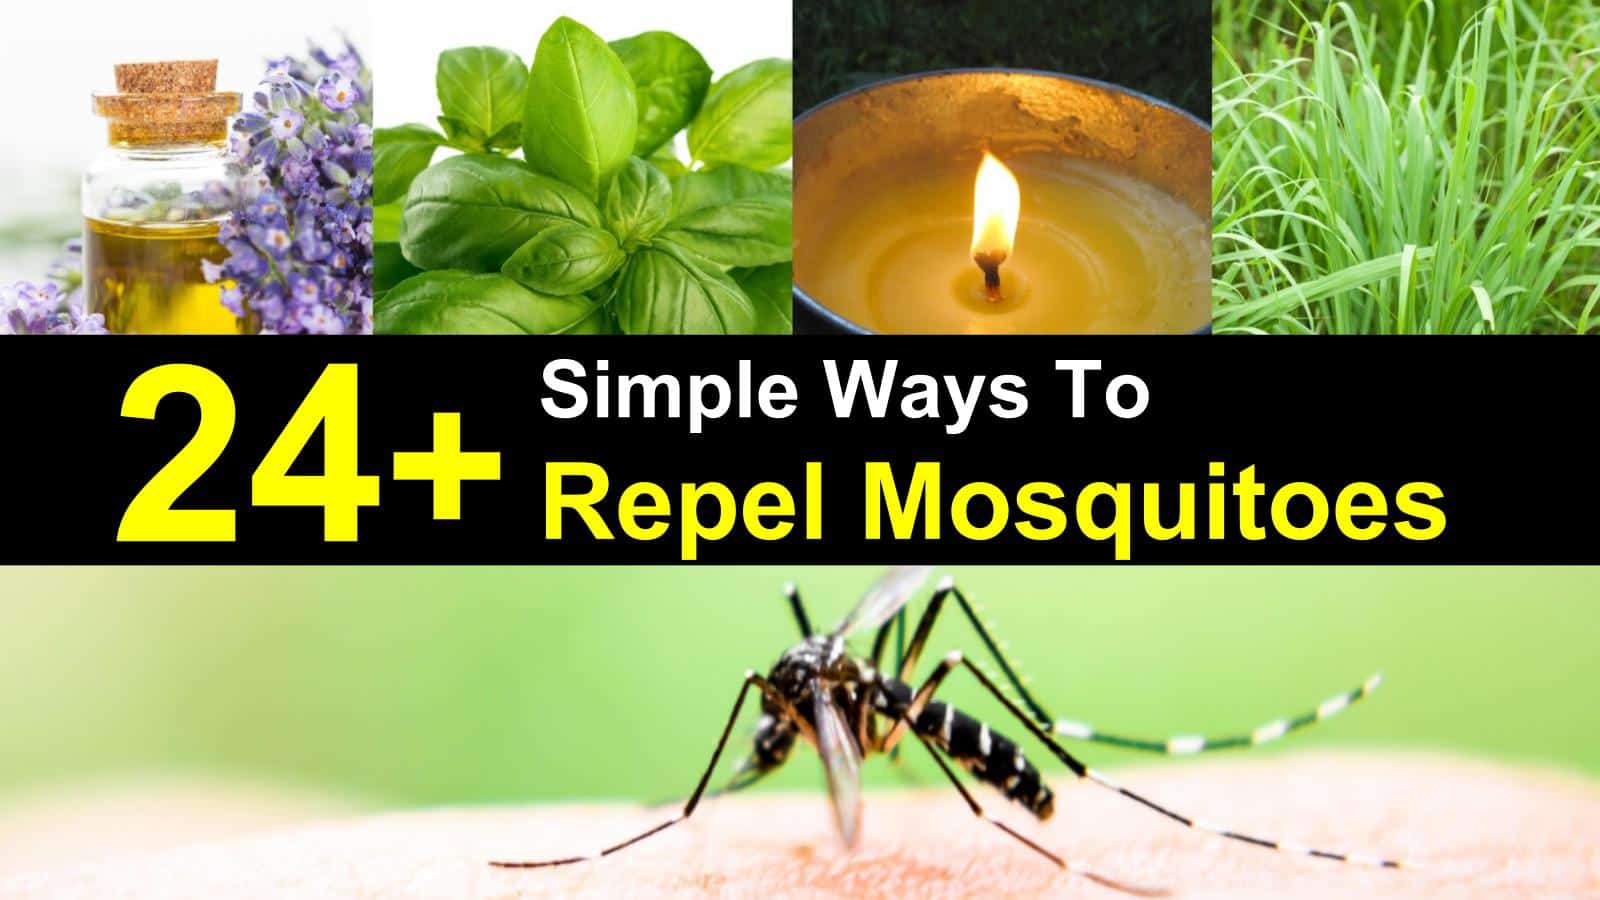 lemongrass as mosquito repellent procedure